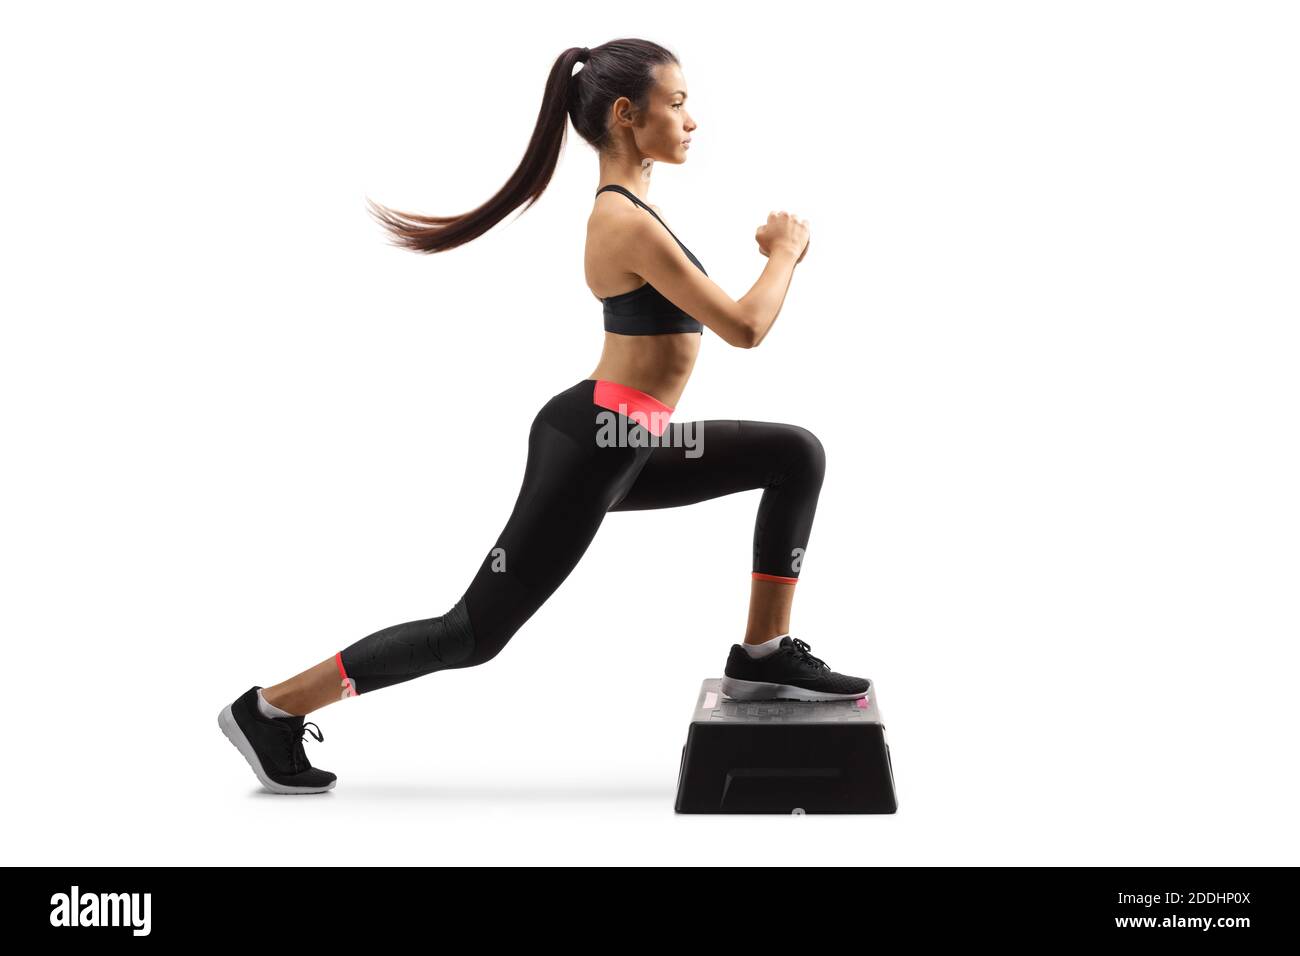 Ganzkörperaufnahme eines Young Fit woma Trainings Step Aerobic isoliert auf weißem Hintergrund Stockfoto